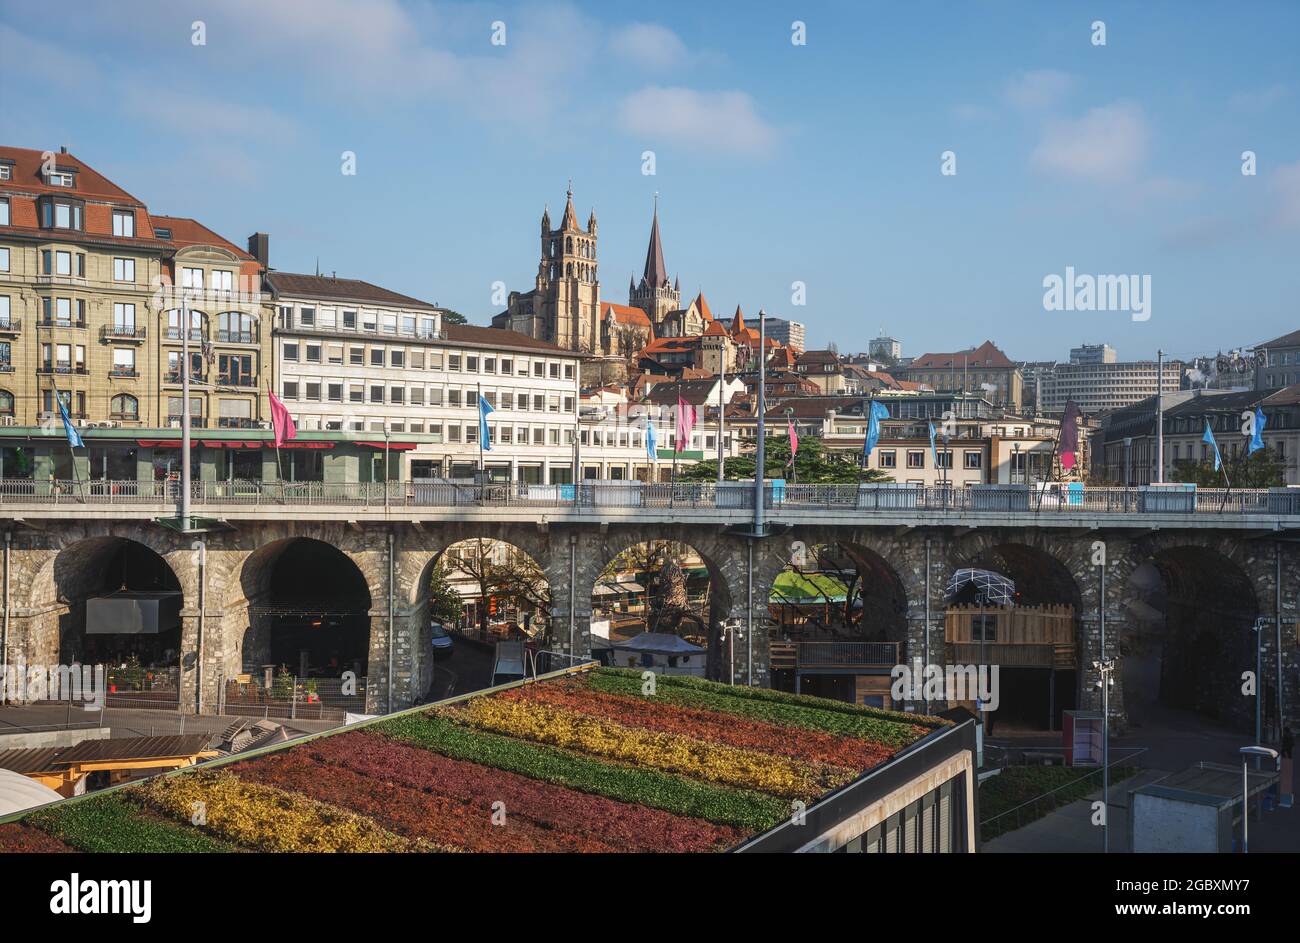 Vue sur le Flon et la ville de Lausanne avec la cathédrale - Lausanne, Suisse Banque D'Images